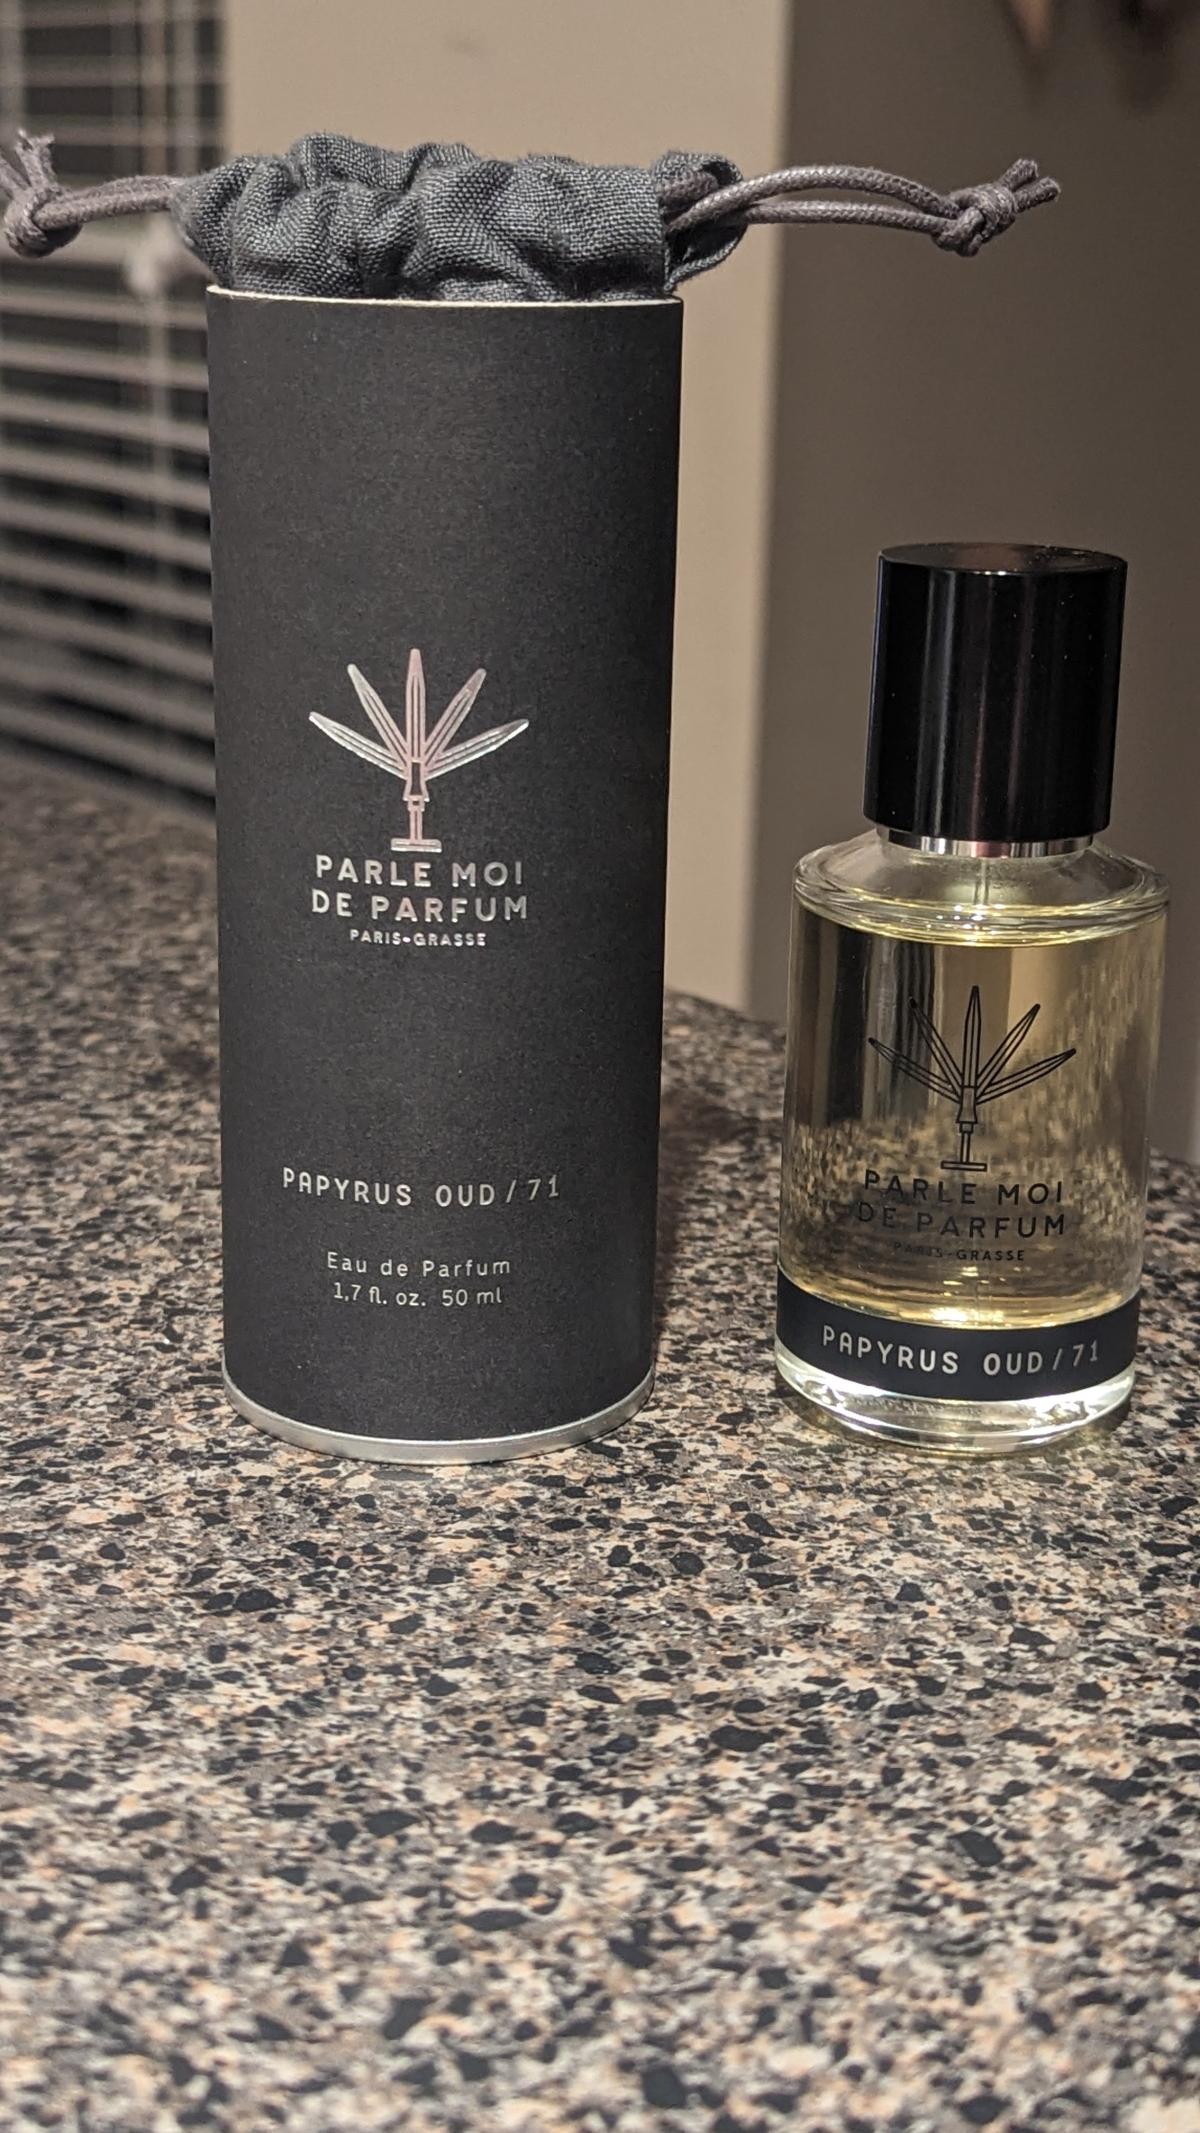 Papyrus Oud 71 Parle Moi de Parfum cologne - a fragrance for men 2018